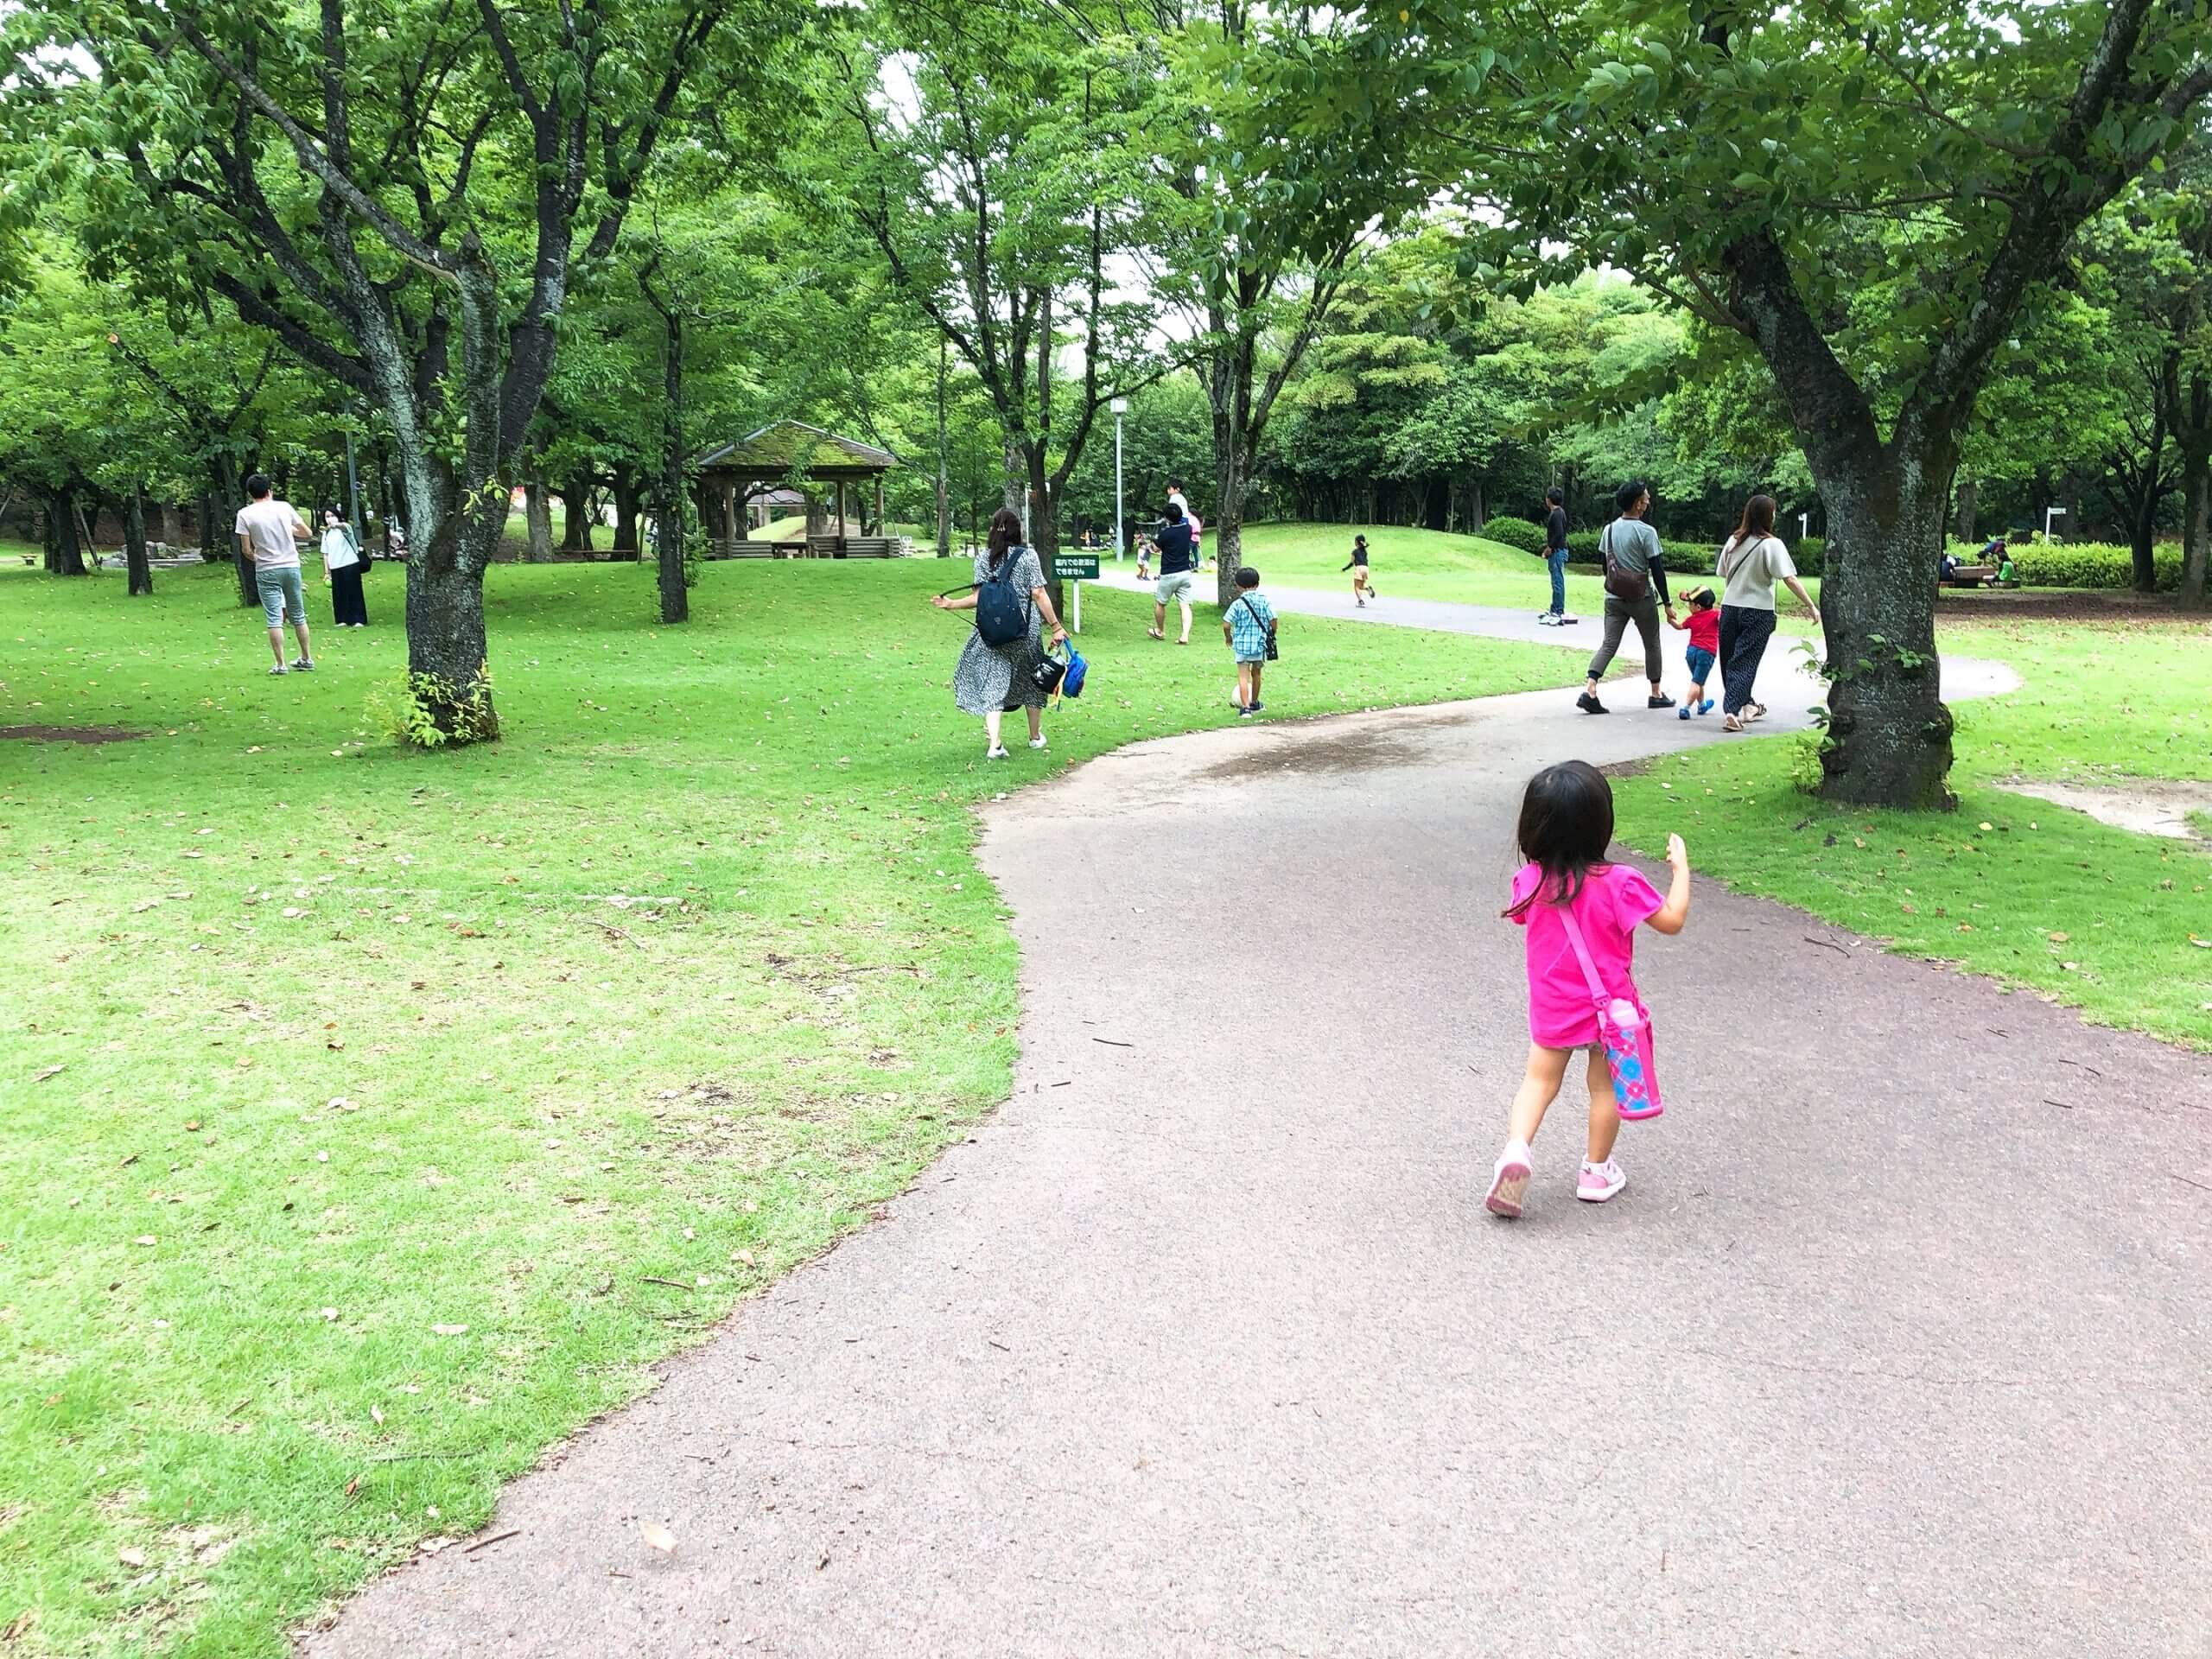 熊本県民総合運動公園ちびっこ広場 自然あり遊具あり 大人も子どもも１日あそべる公園 熊本市東区石原 さるクマ さるこう 熊本